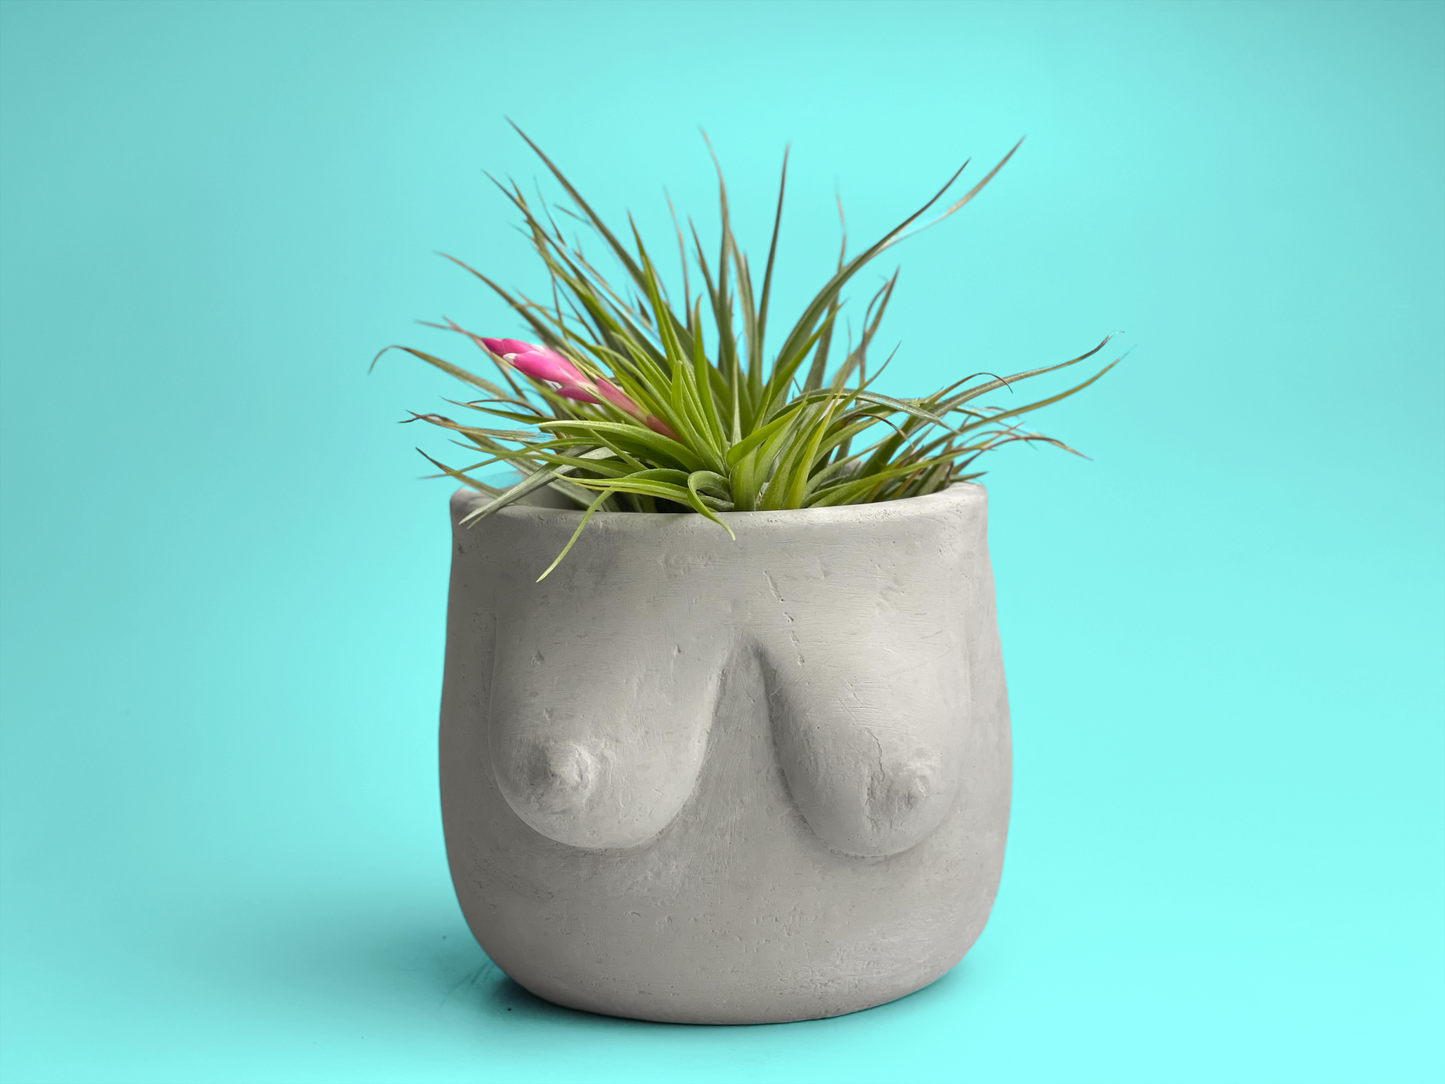 Boobs Planter | Woman Body Pot